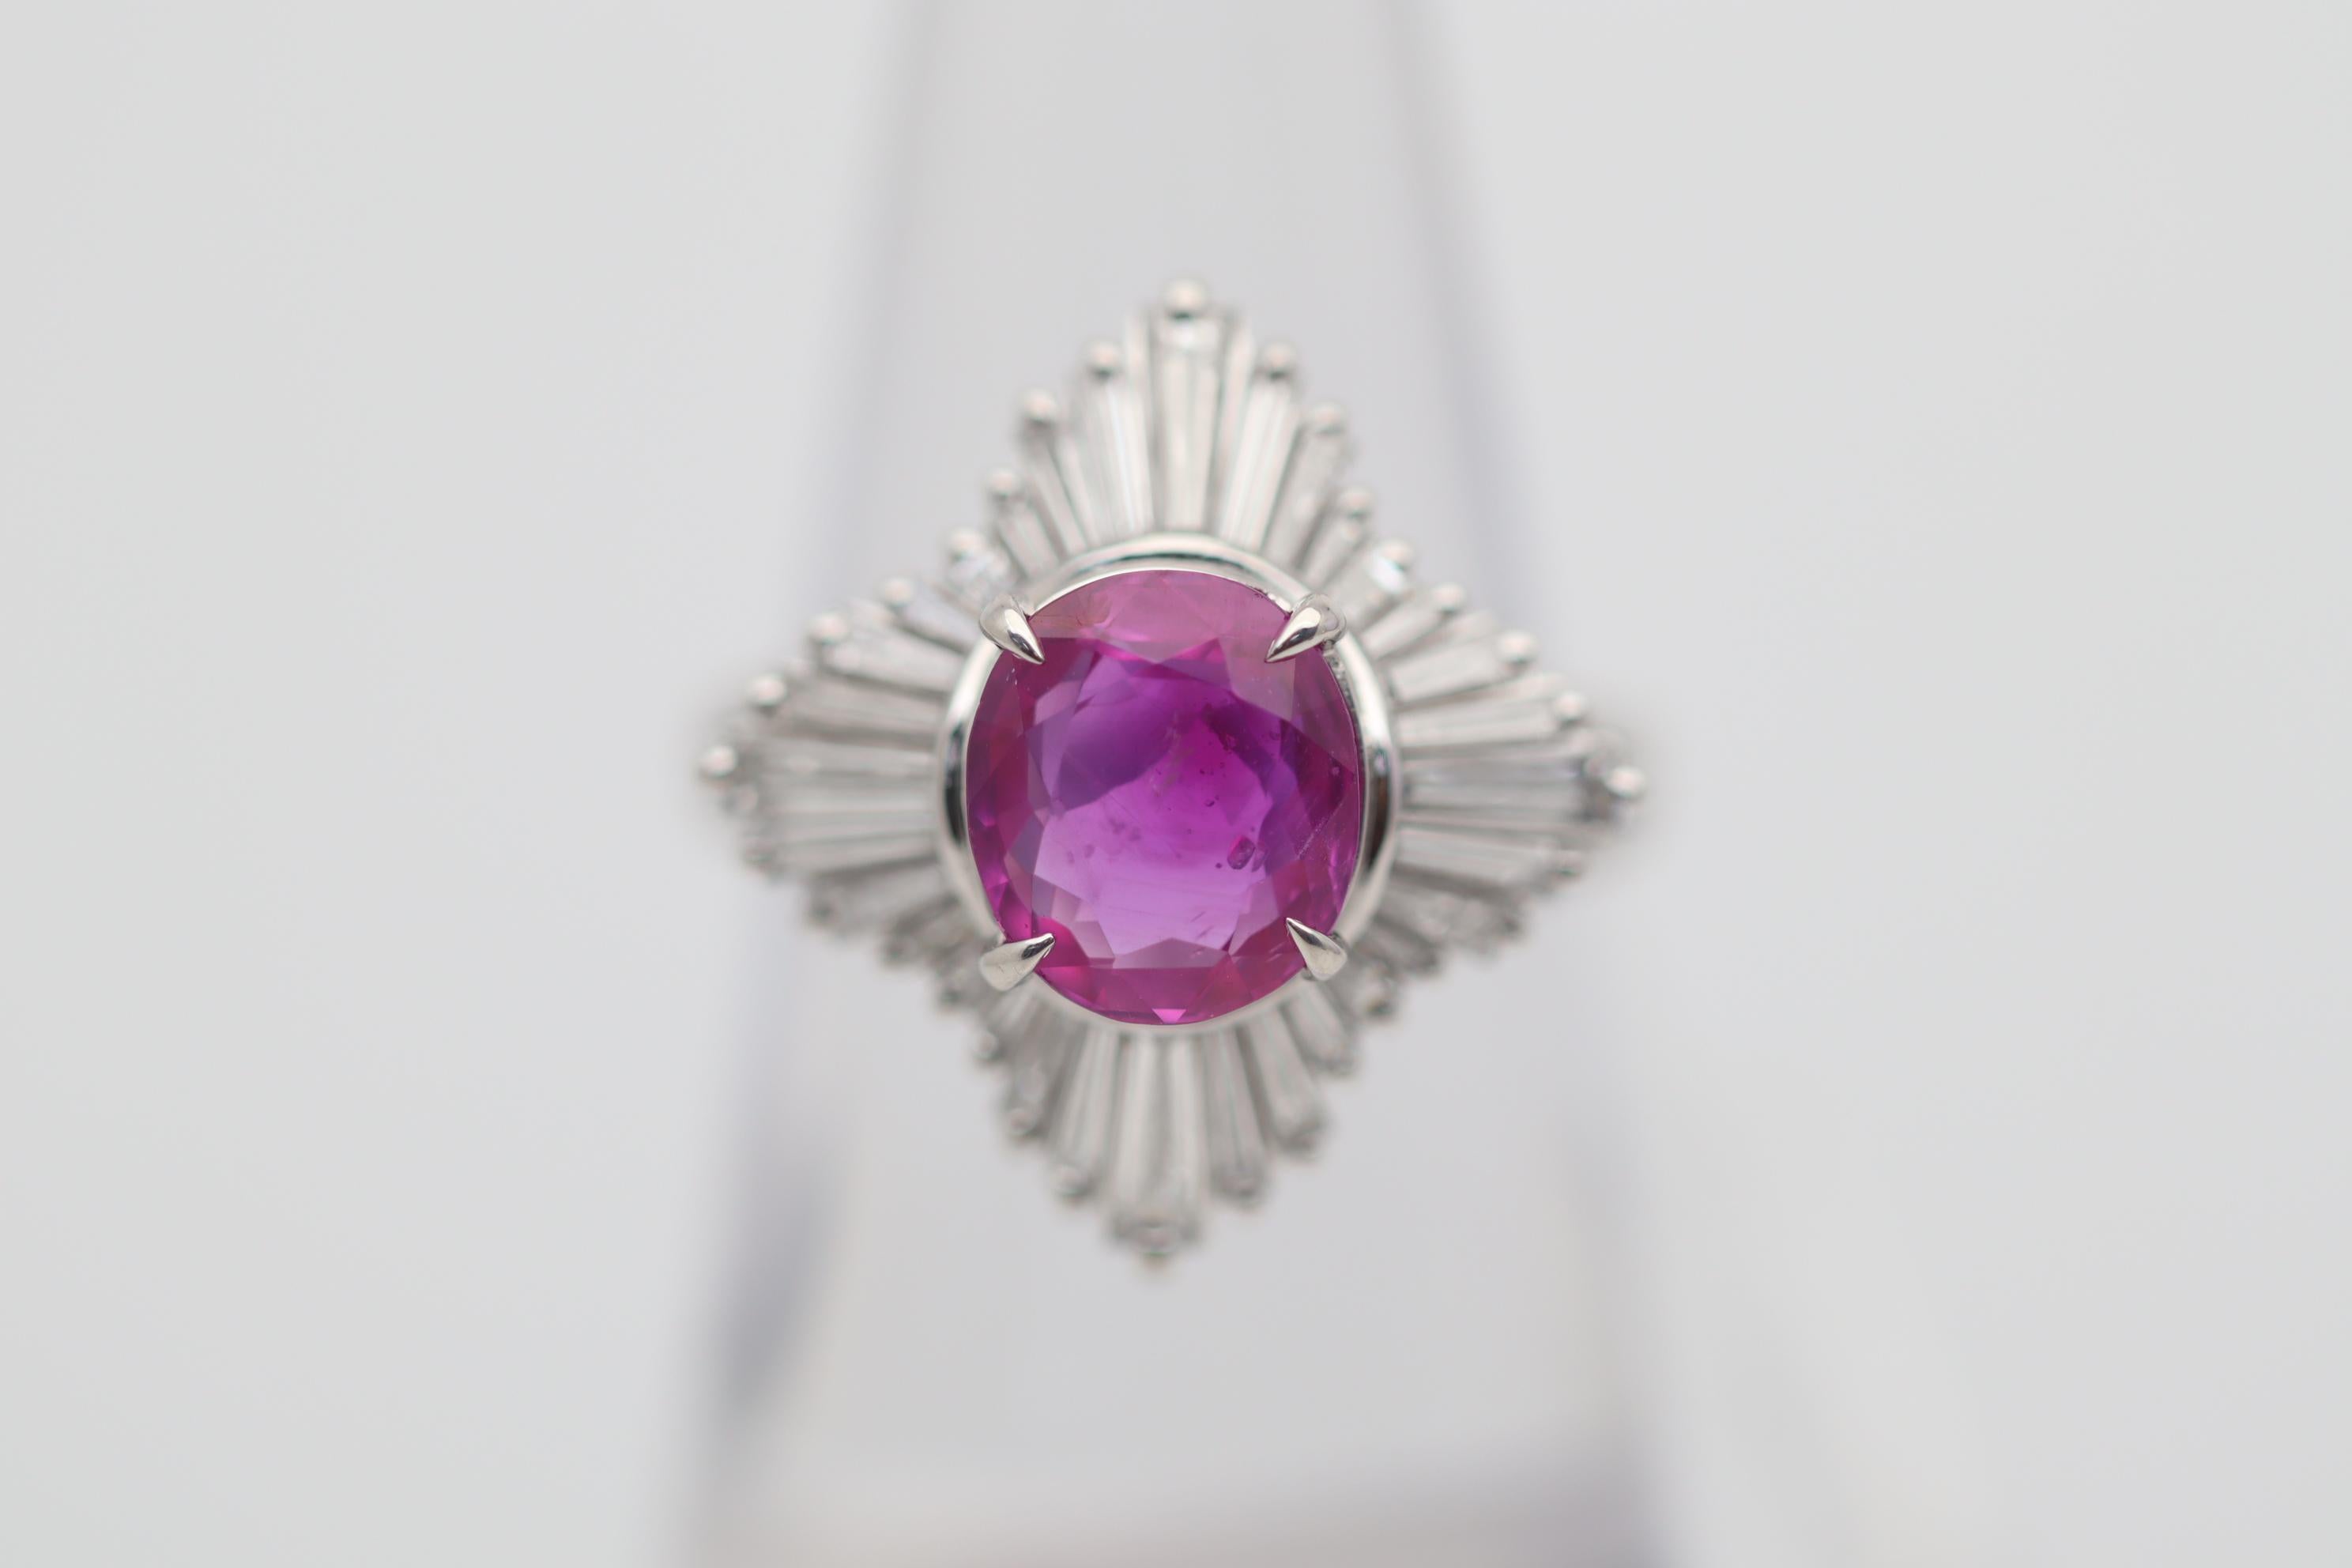 Ein besonderer Edelstein steht im Mittelpunkt dieses Diamant-Platinrings. Es handelt sich um einen 2,84 Karat schweren rosafarbenen Saphir mit einer satten, intensiven Farbe, die den Stein fast zu einem Rubin macht. Das Besondere an diesem Edelstein